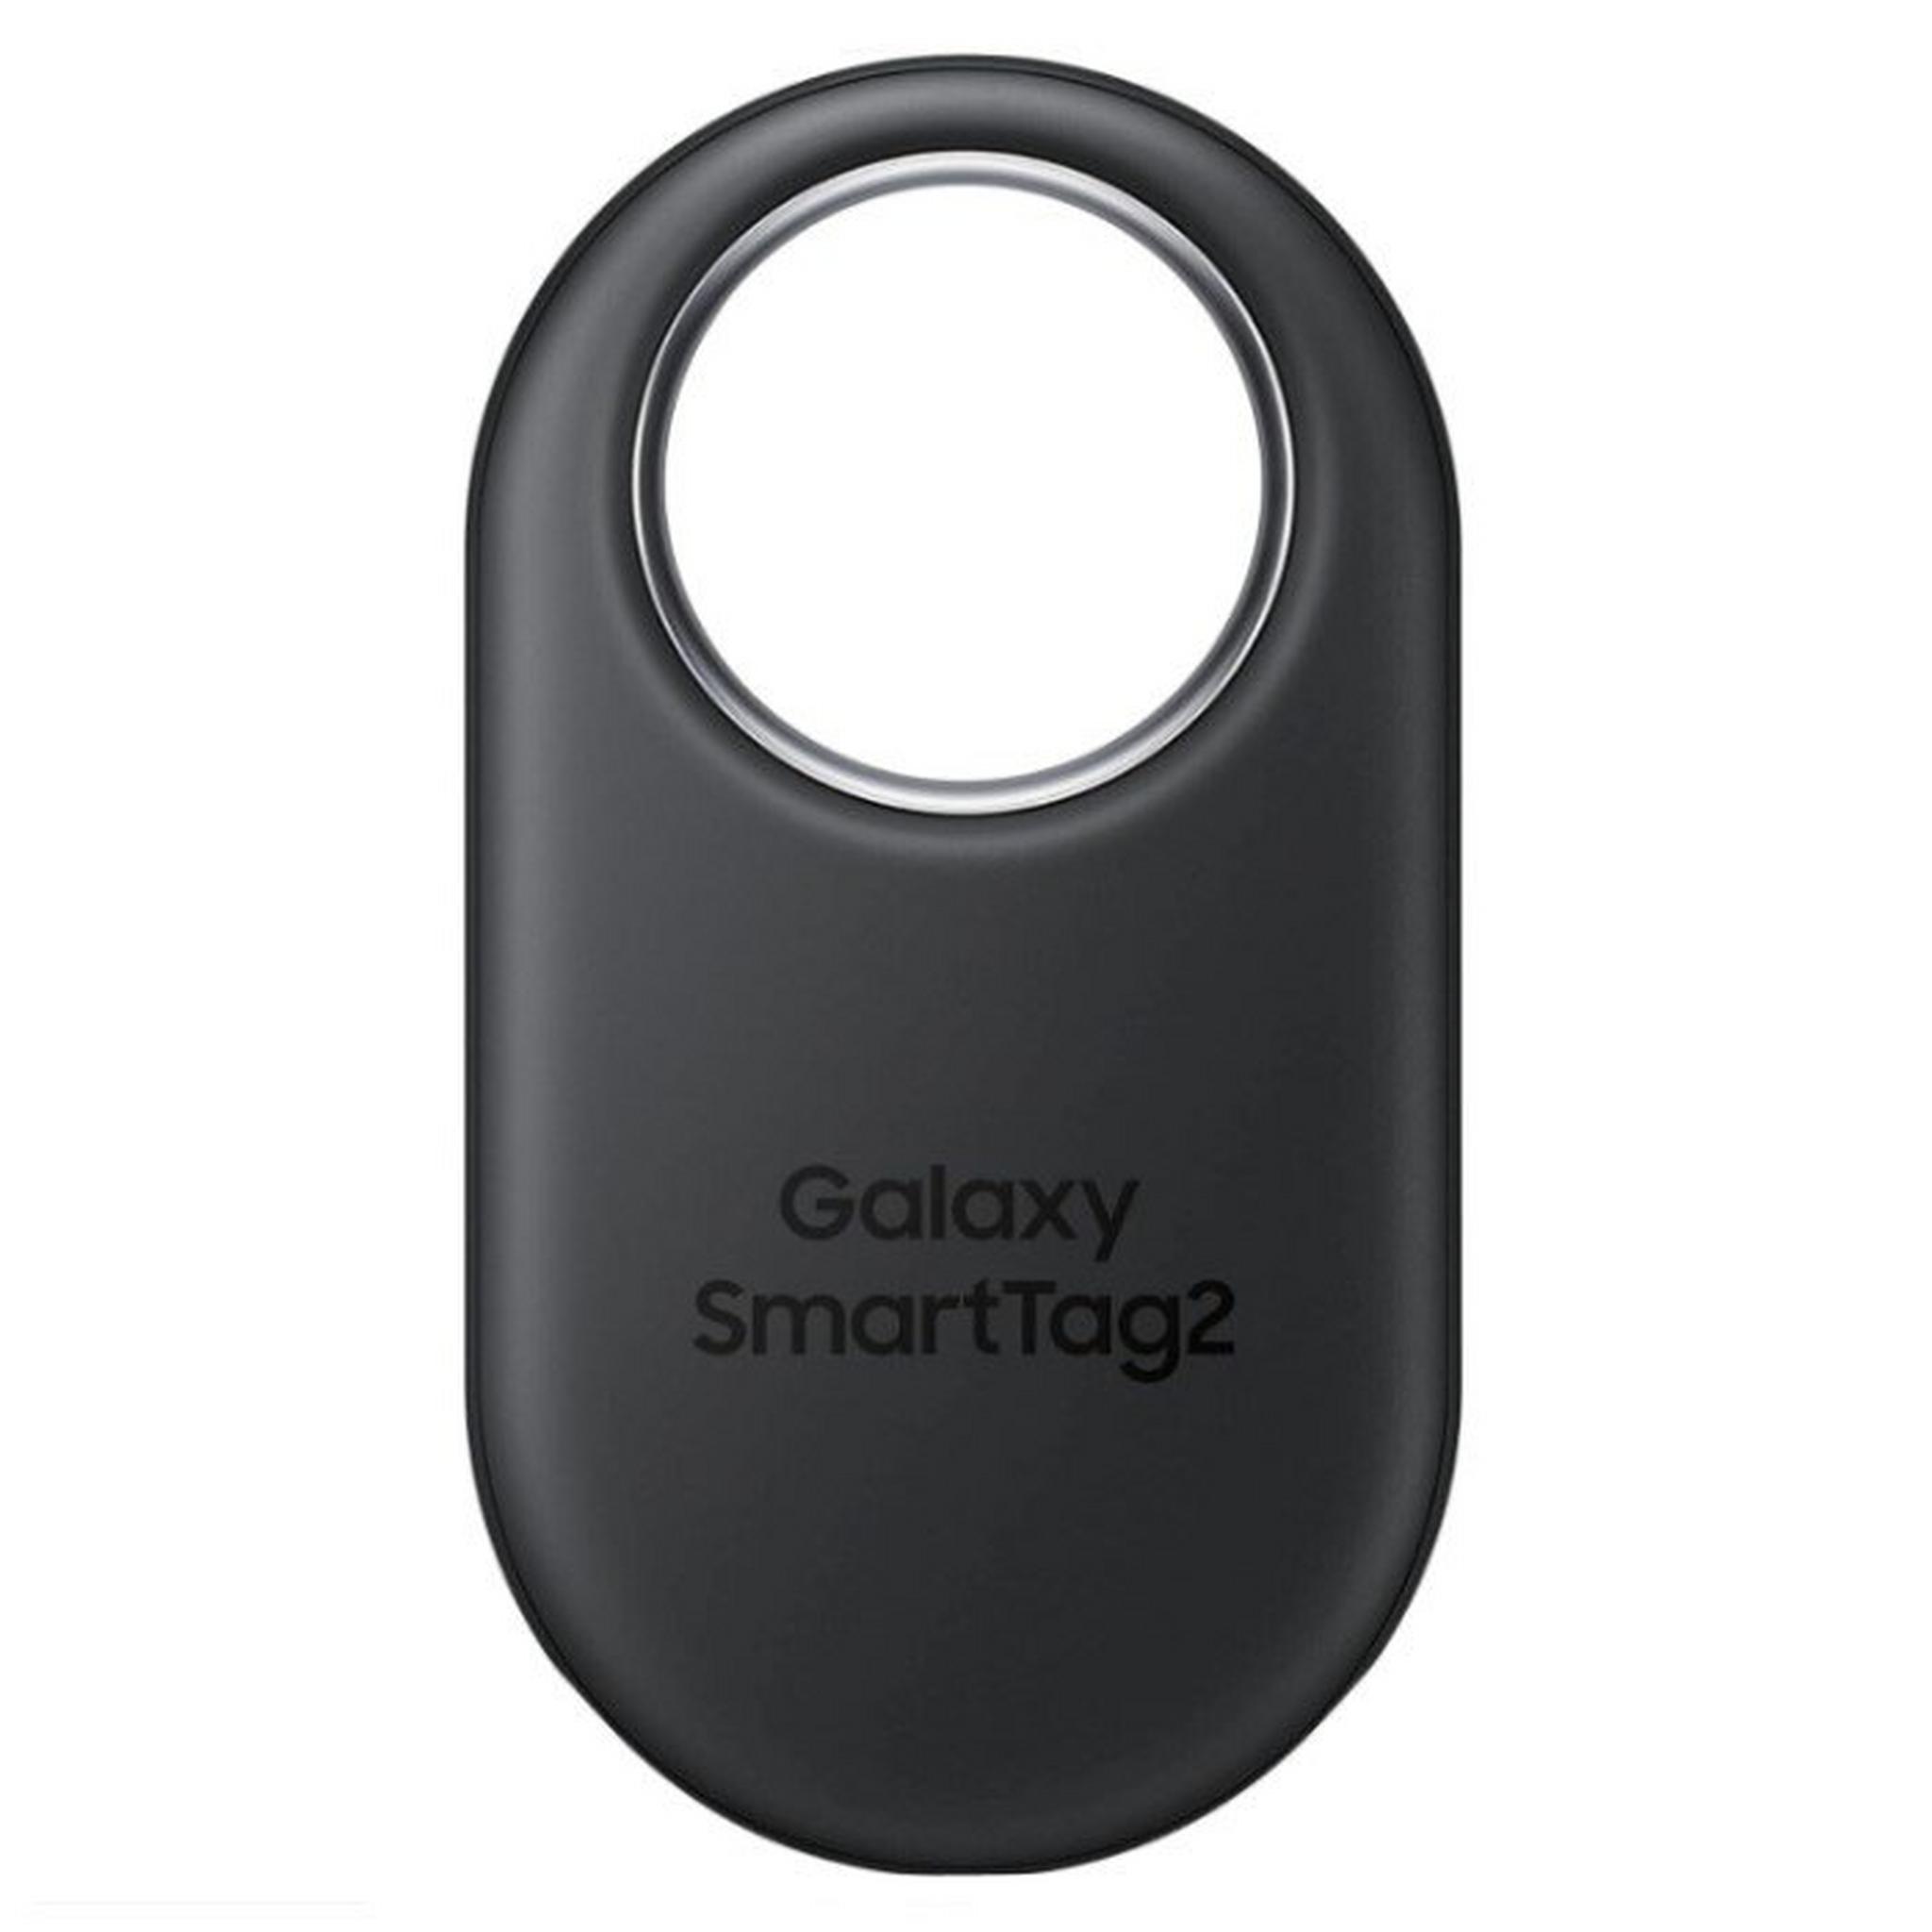 Samsung Galaxy SmartTag2 – Black